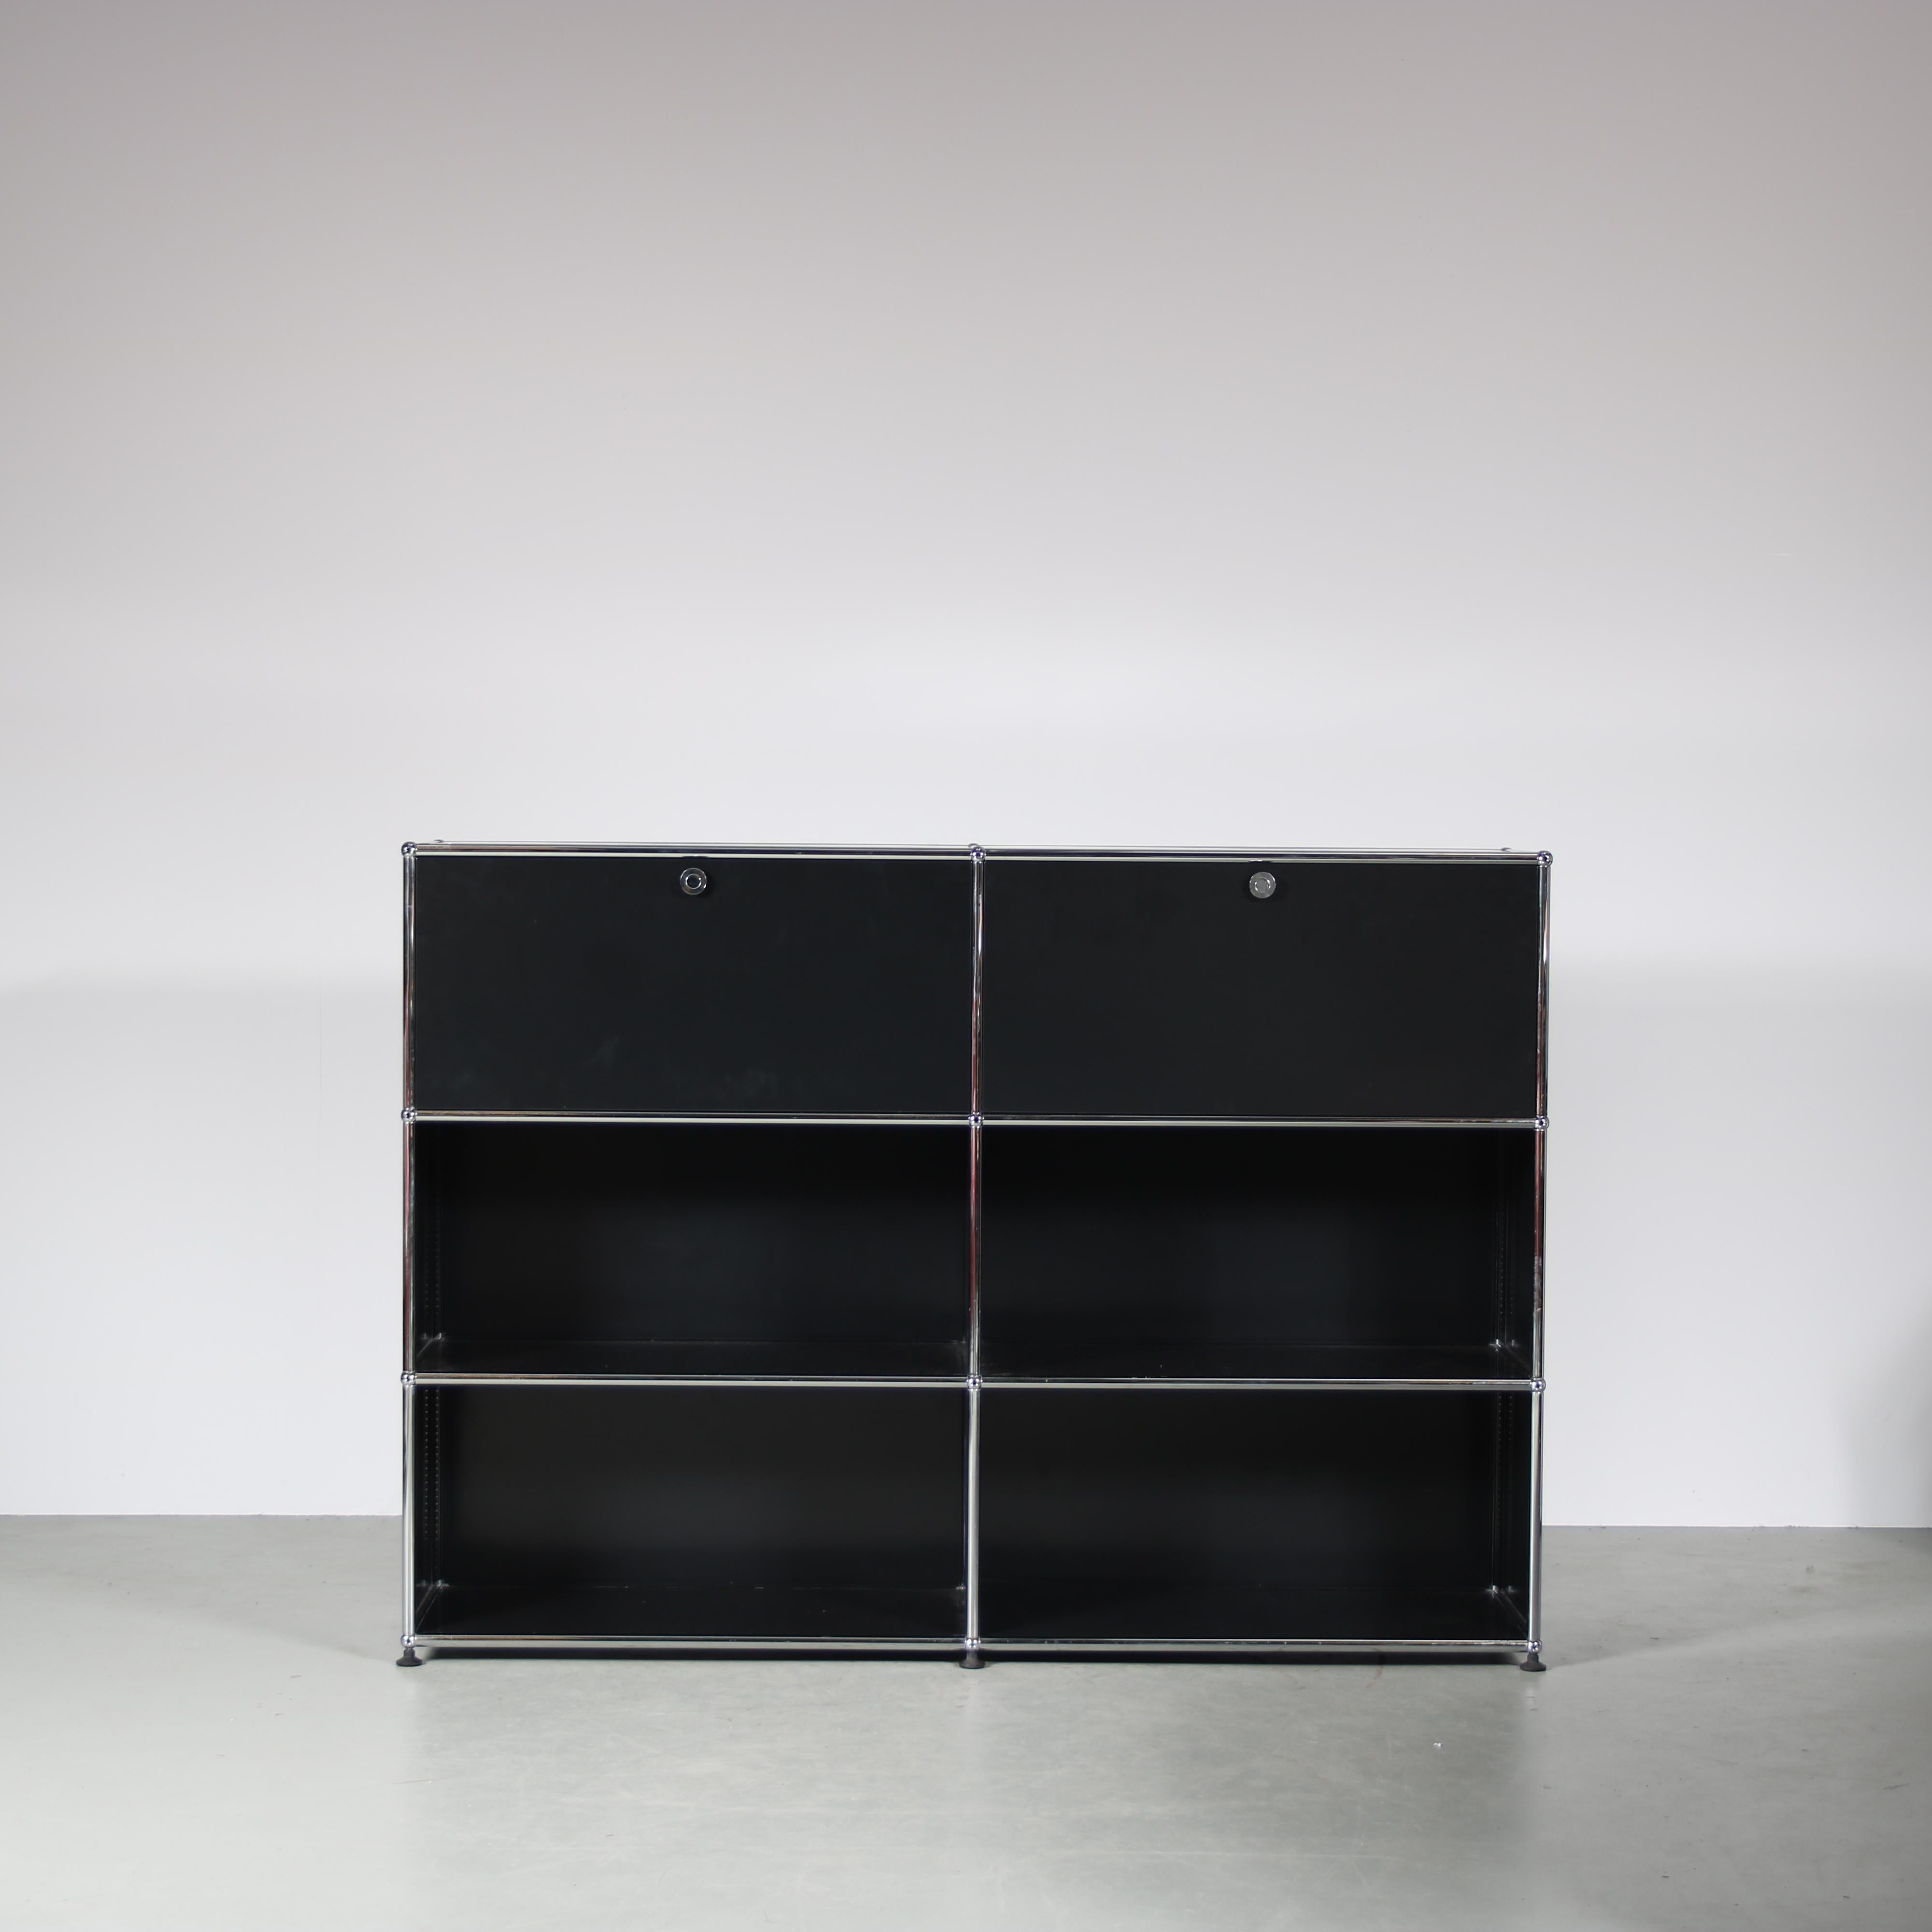 

Cette grande armoire en métal chromé et noir est une création des années 1980 de Paul Schaerer et Fritz Haller, produite par USM en Suisse.

L'armoire a une largeur de 2 unités et une hauteur de 3 unités, ce qui offre un espace de rangement